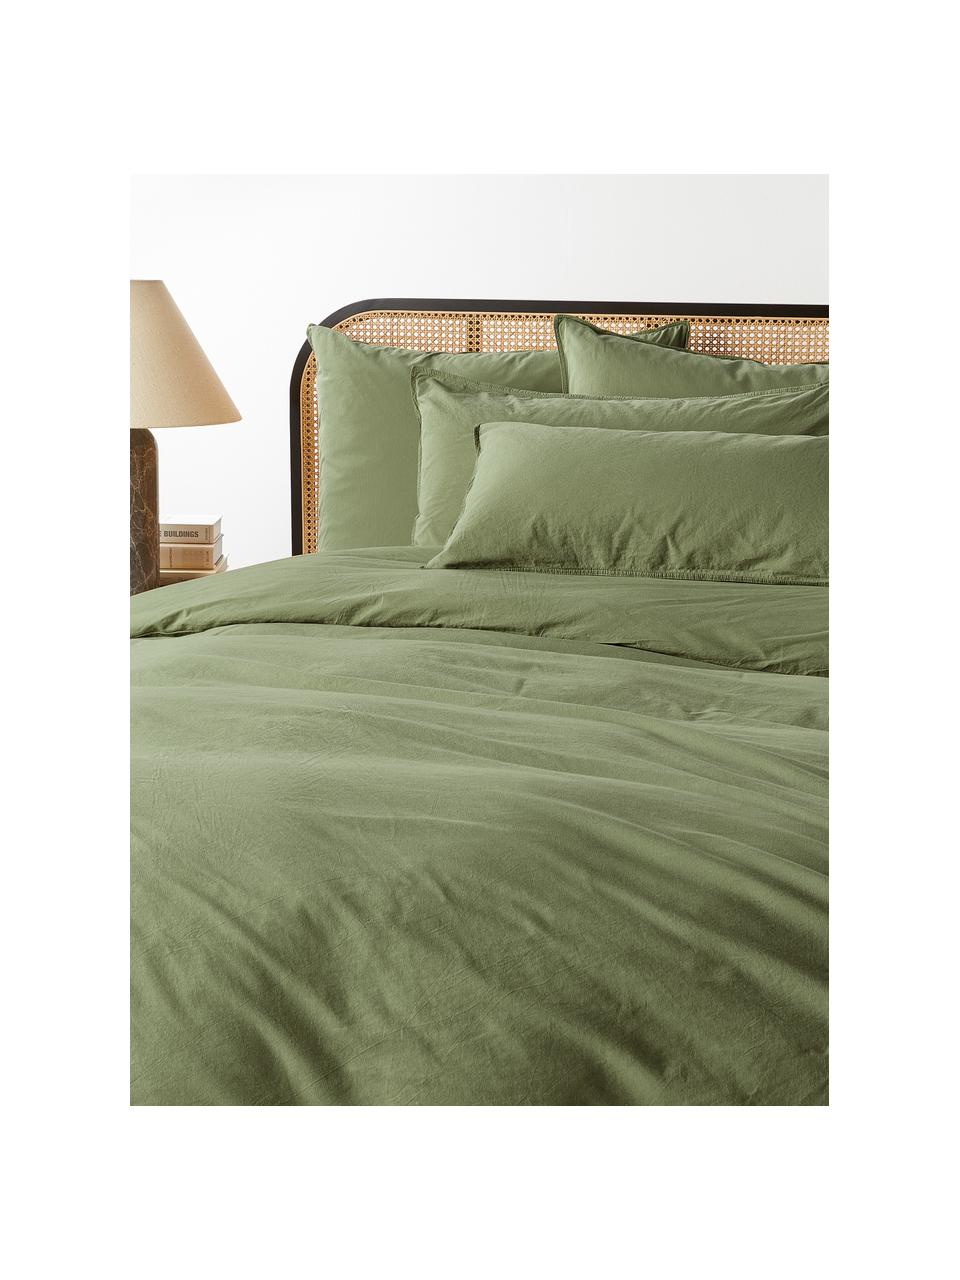 Poszwa na kołdrę z bawełny Darlyn, Oliwkowy zielony, S 200 x D 200 cm